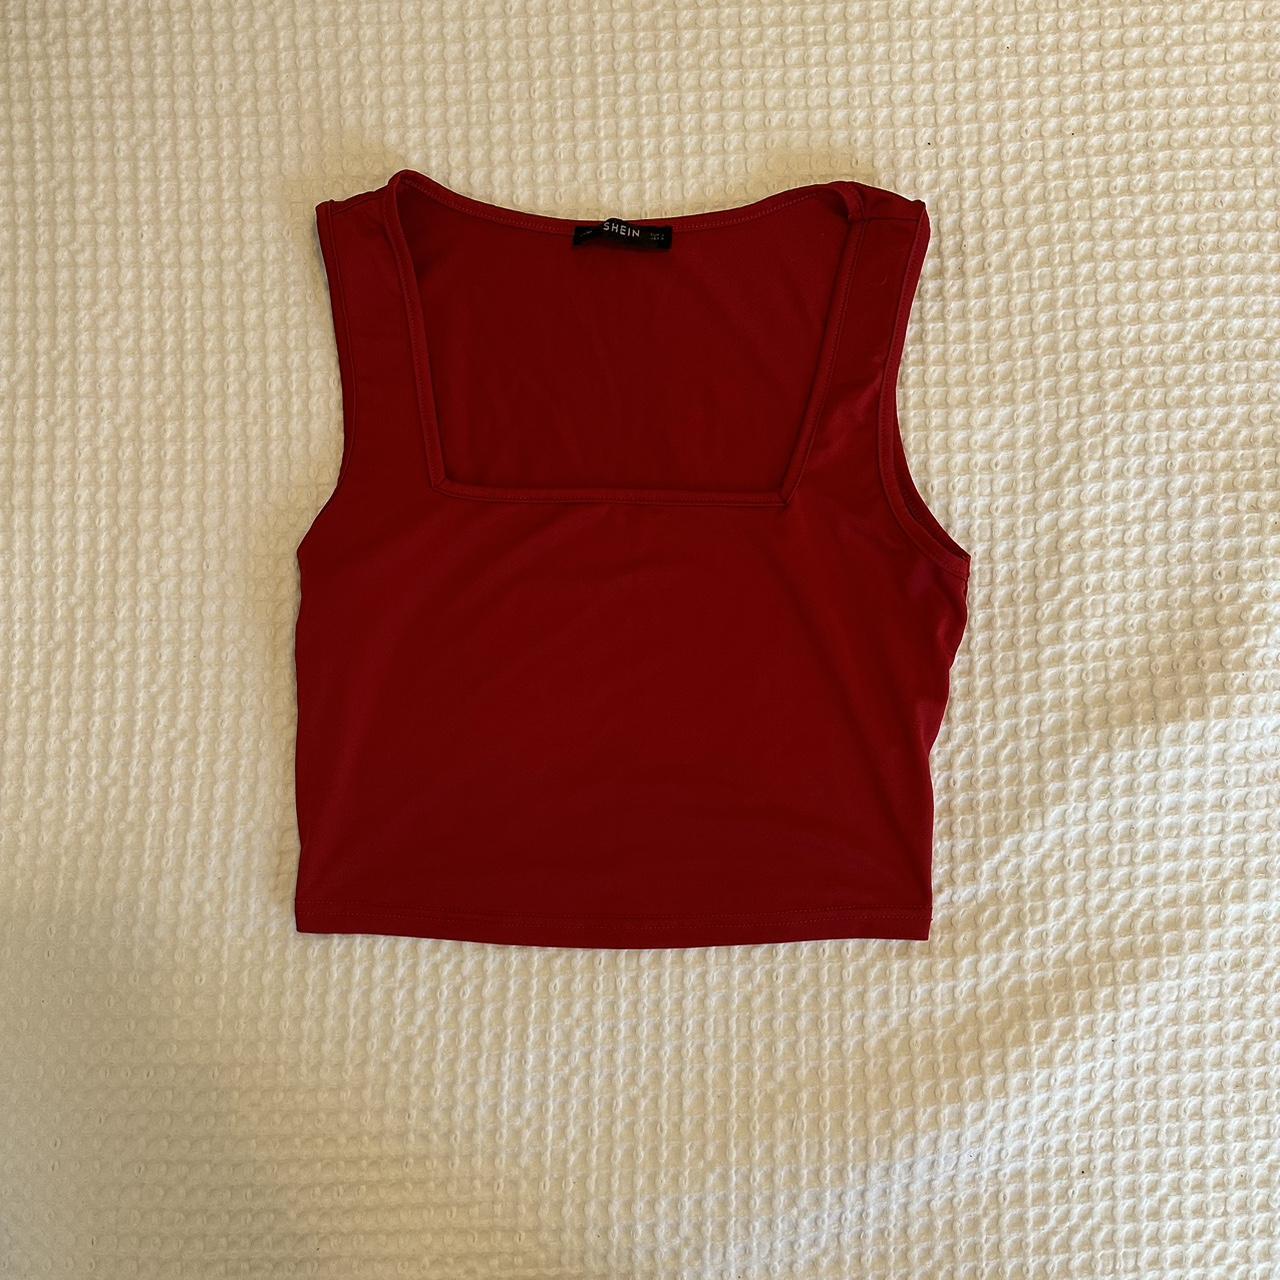 SHEIN Women's Red Vest